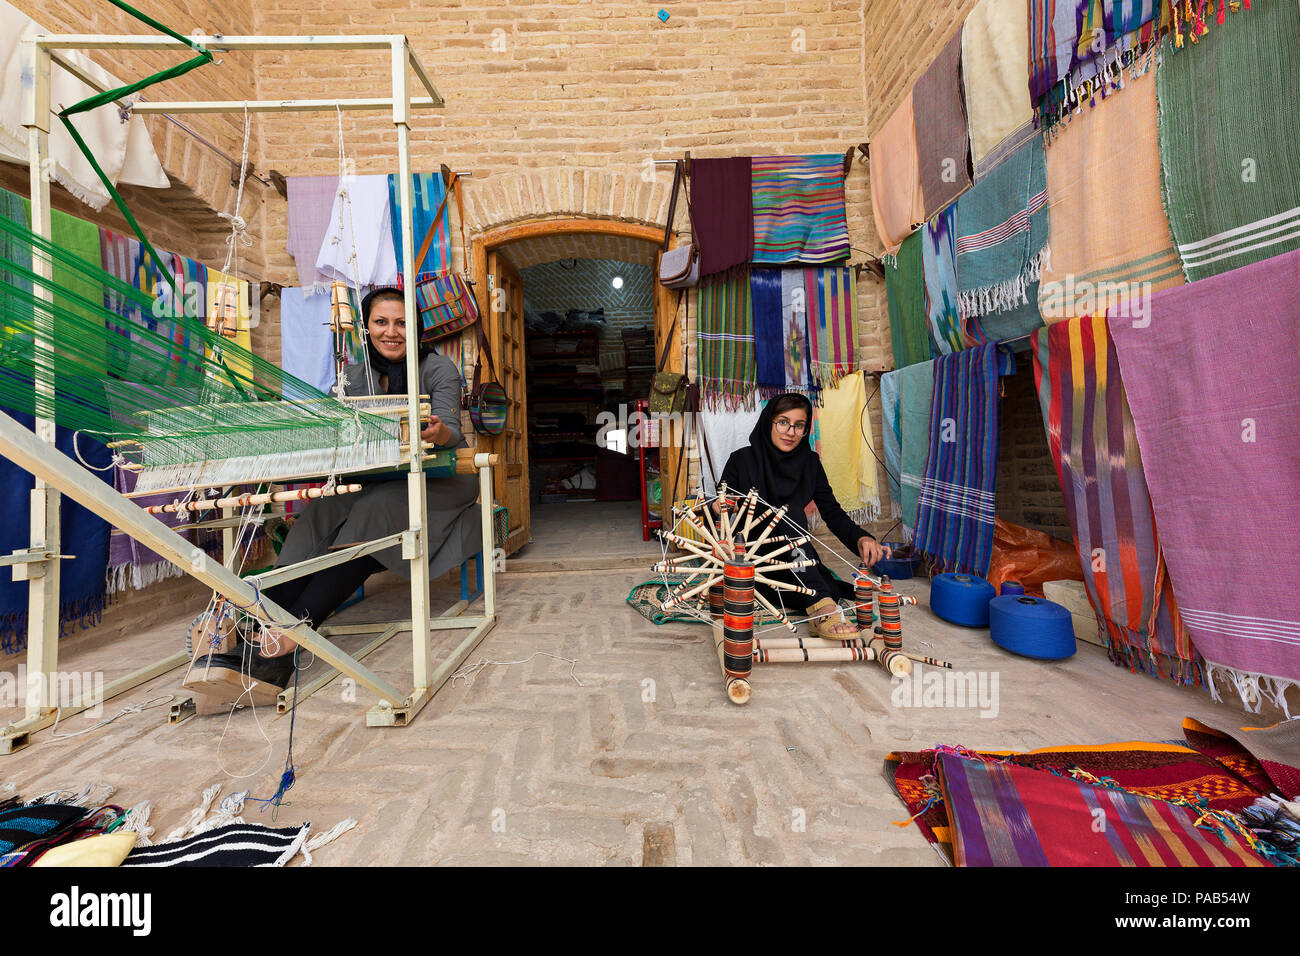 La donna si intreccia con il tessuto in modo tradizionale e un'altra donna gira la lana, in Meybod, Iran. Foto Stock